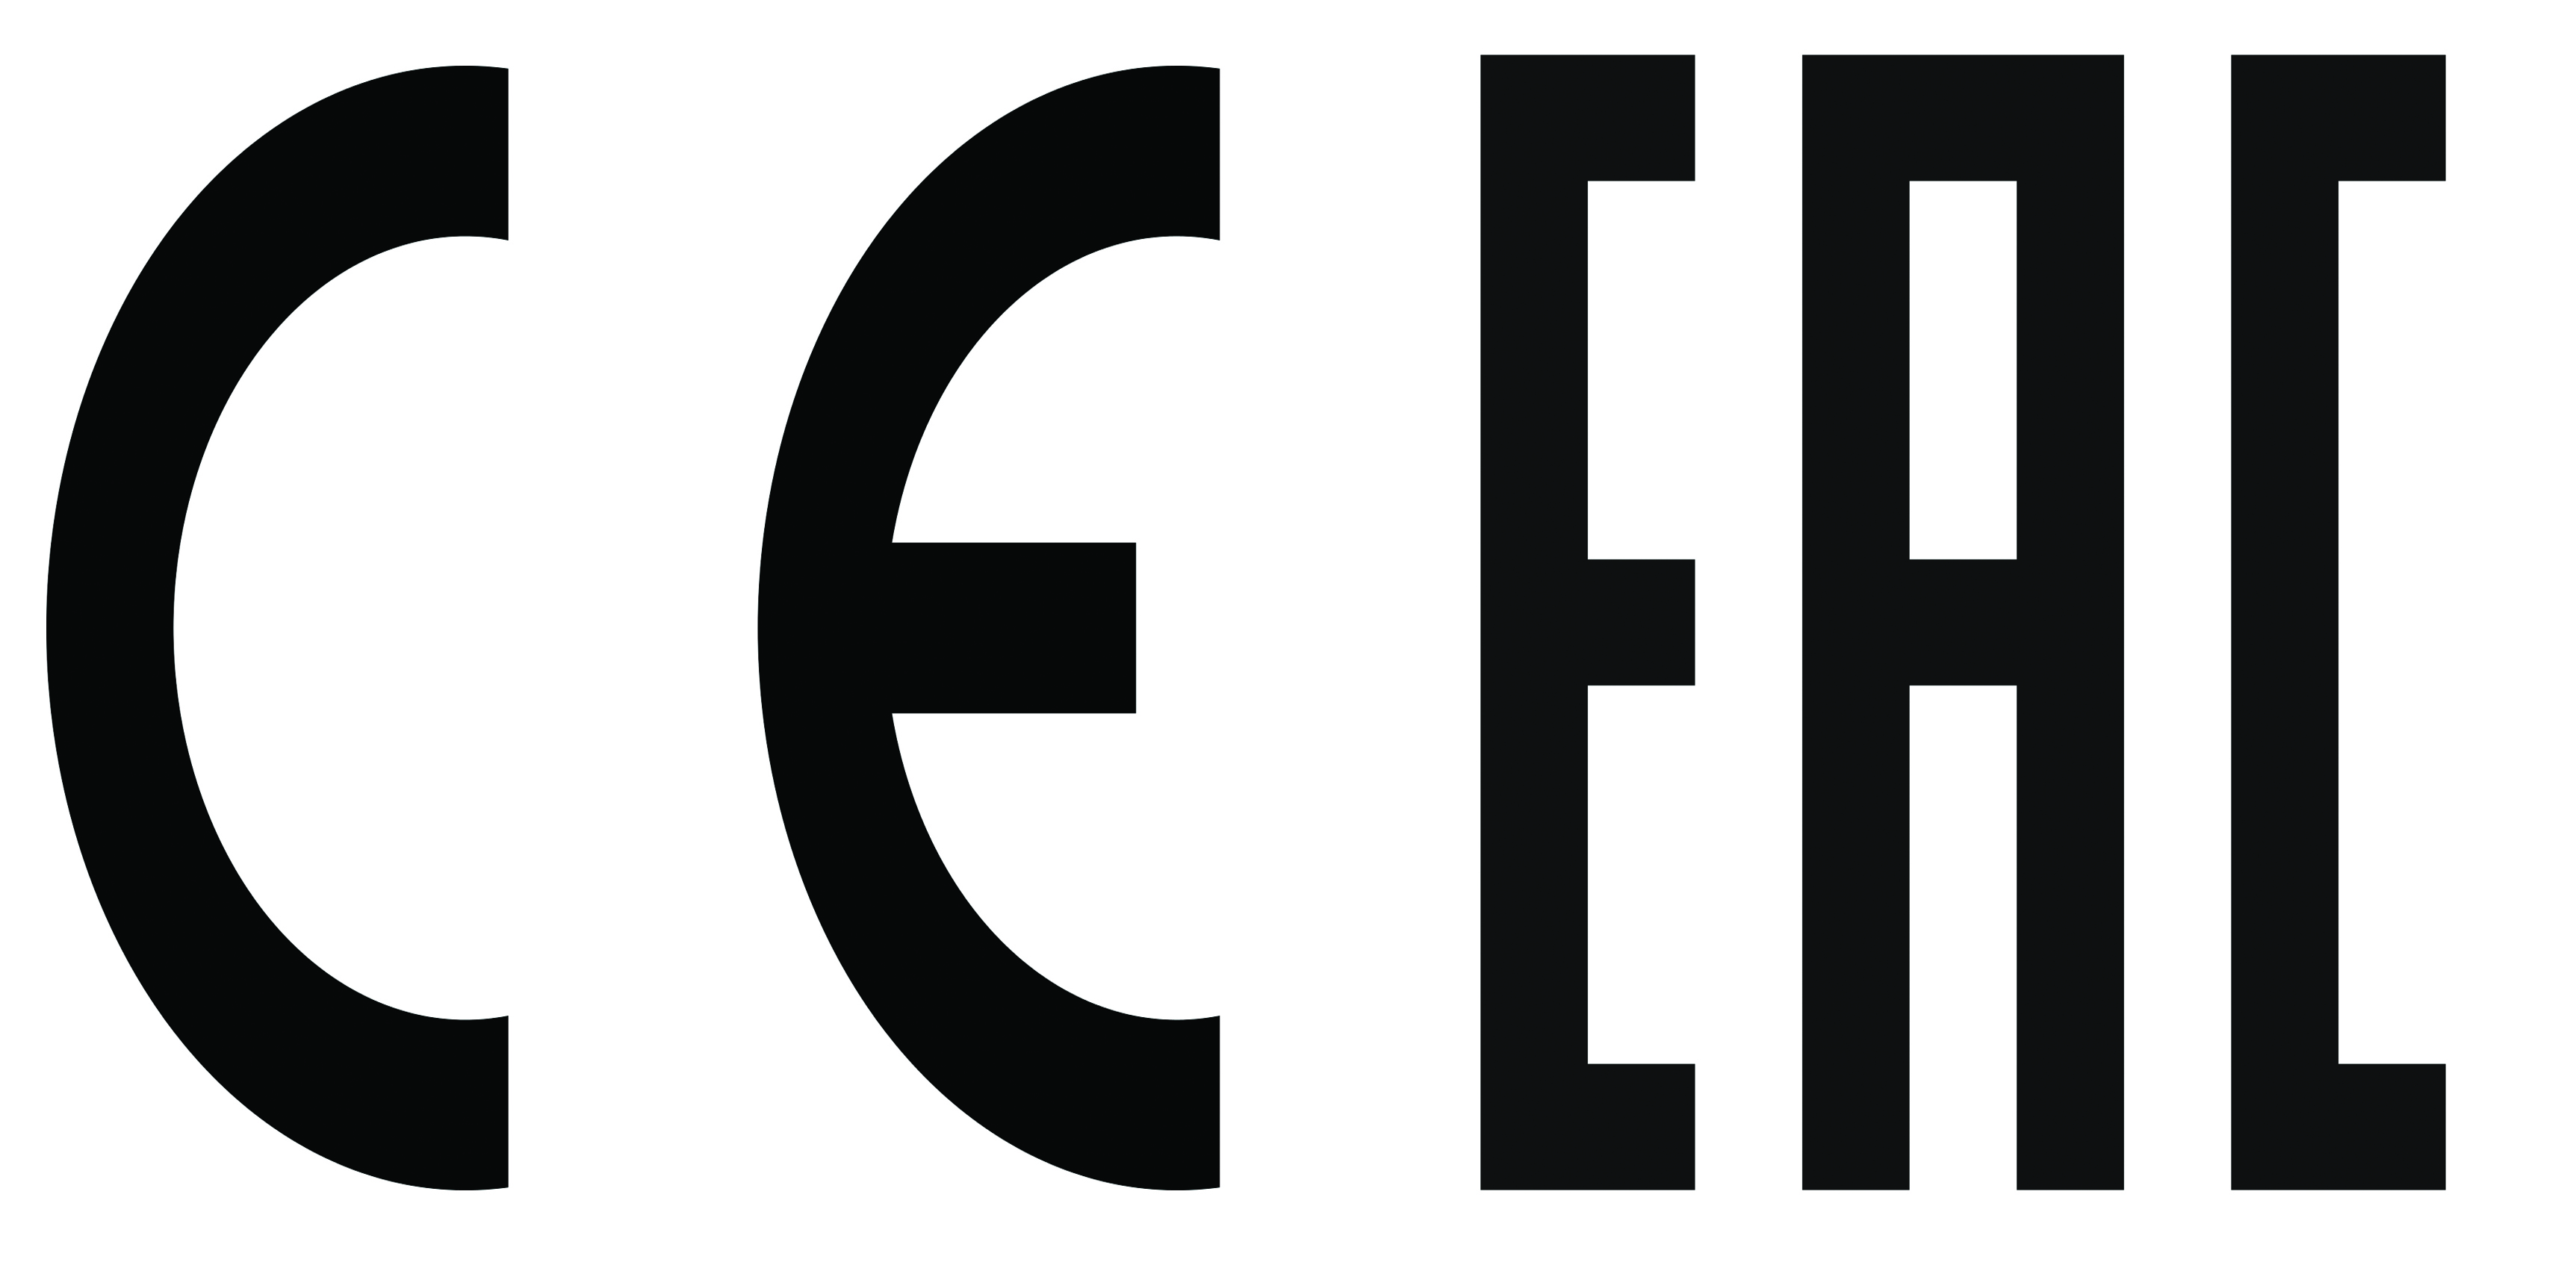 Логотип оттаявший. EAC знак. Знак качества ЕАС. EAC логотип. Значок ЕАС на белом фоне.